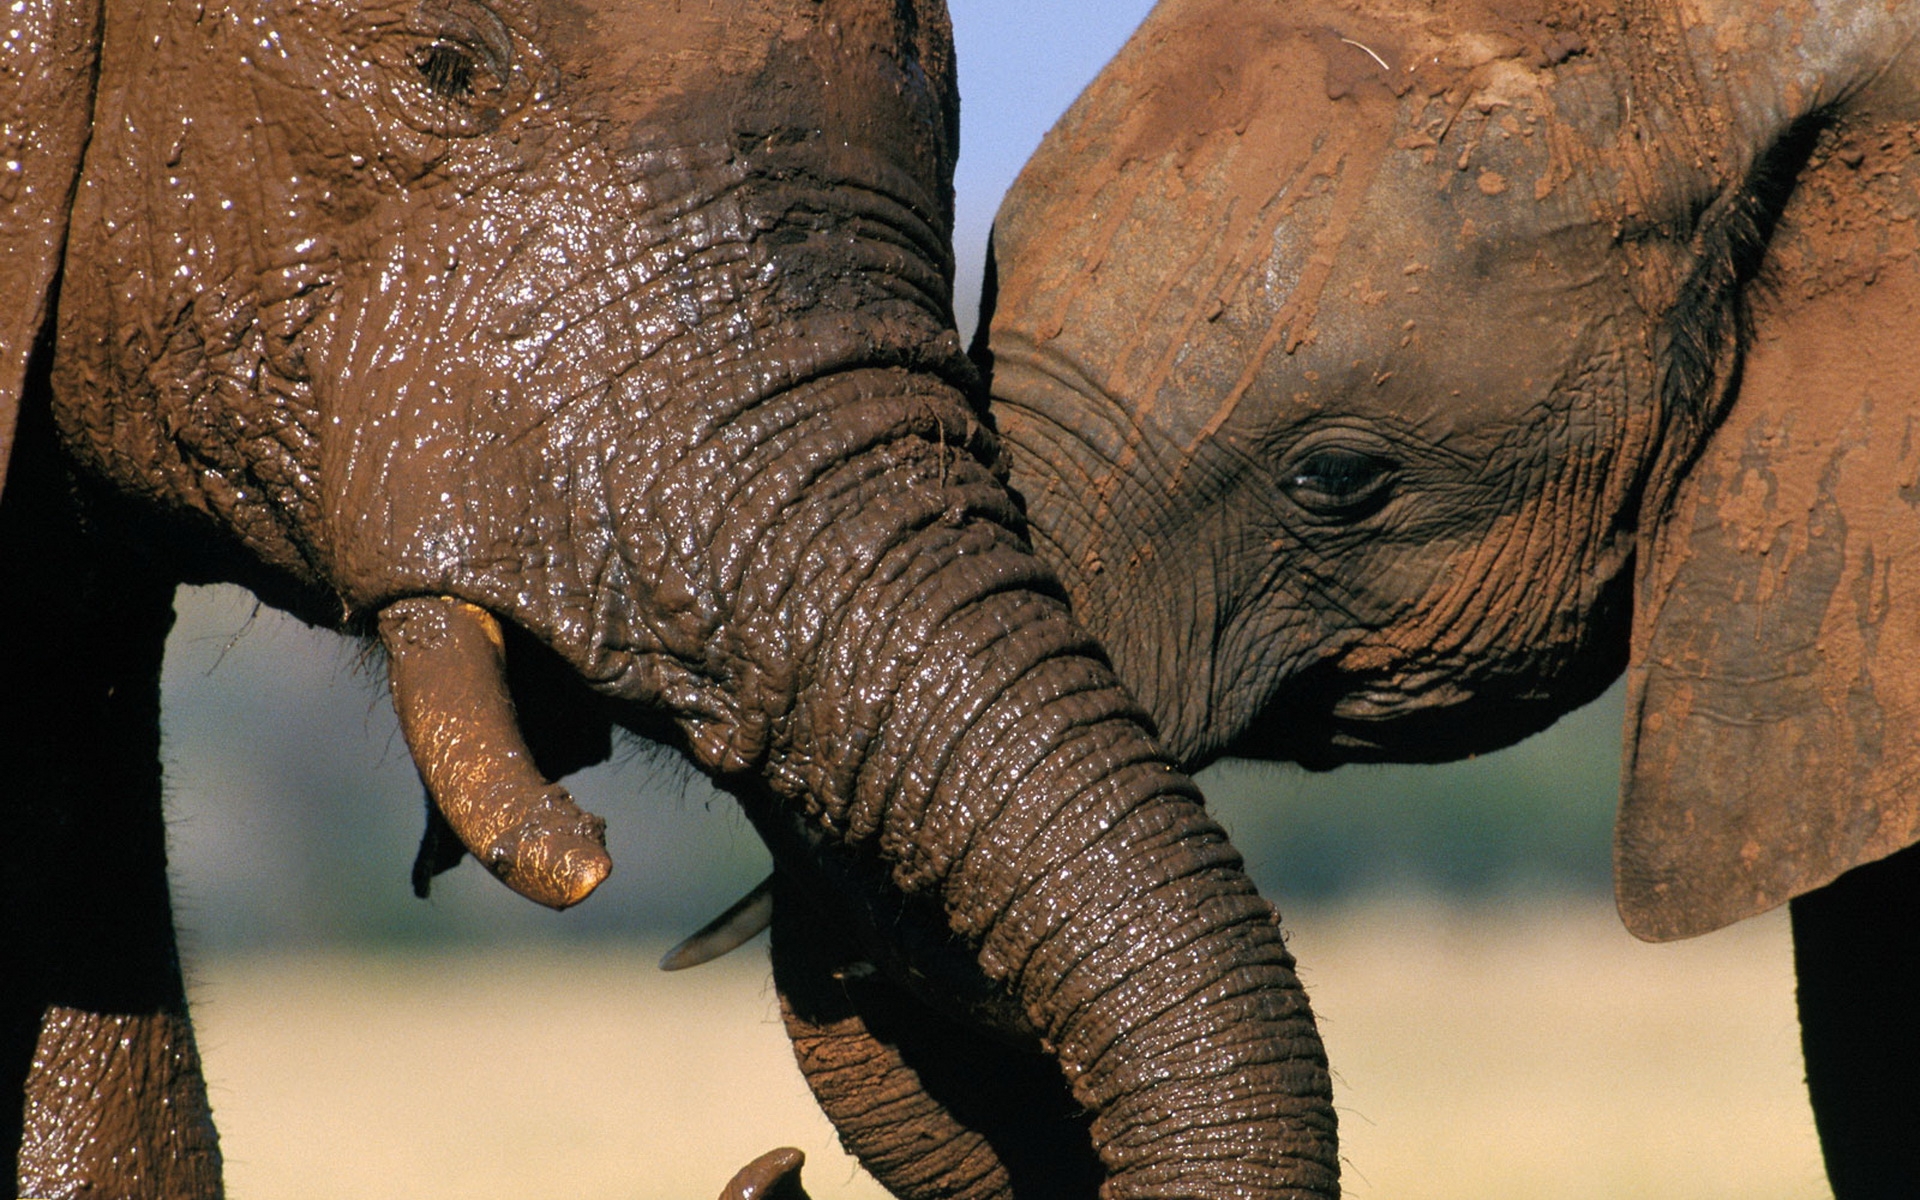 Descarga gratuita de fondo de pantalla para móvil de Elefante Asiático, Elefantes, Animales.